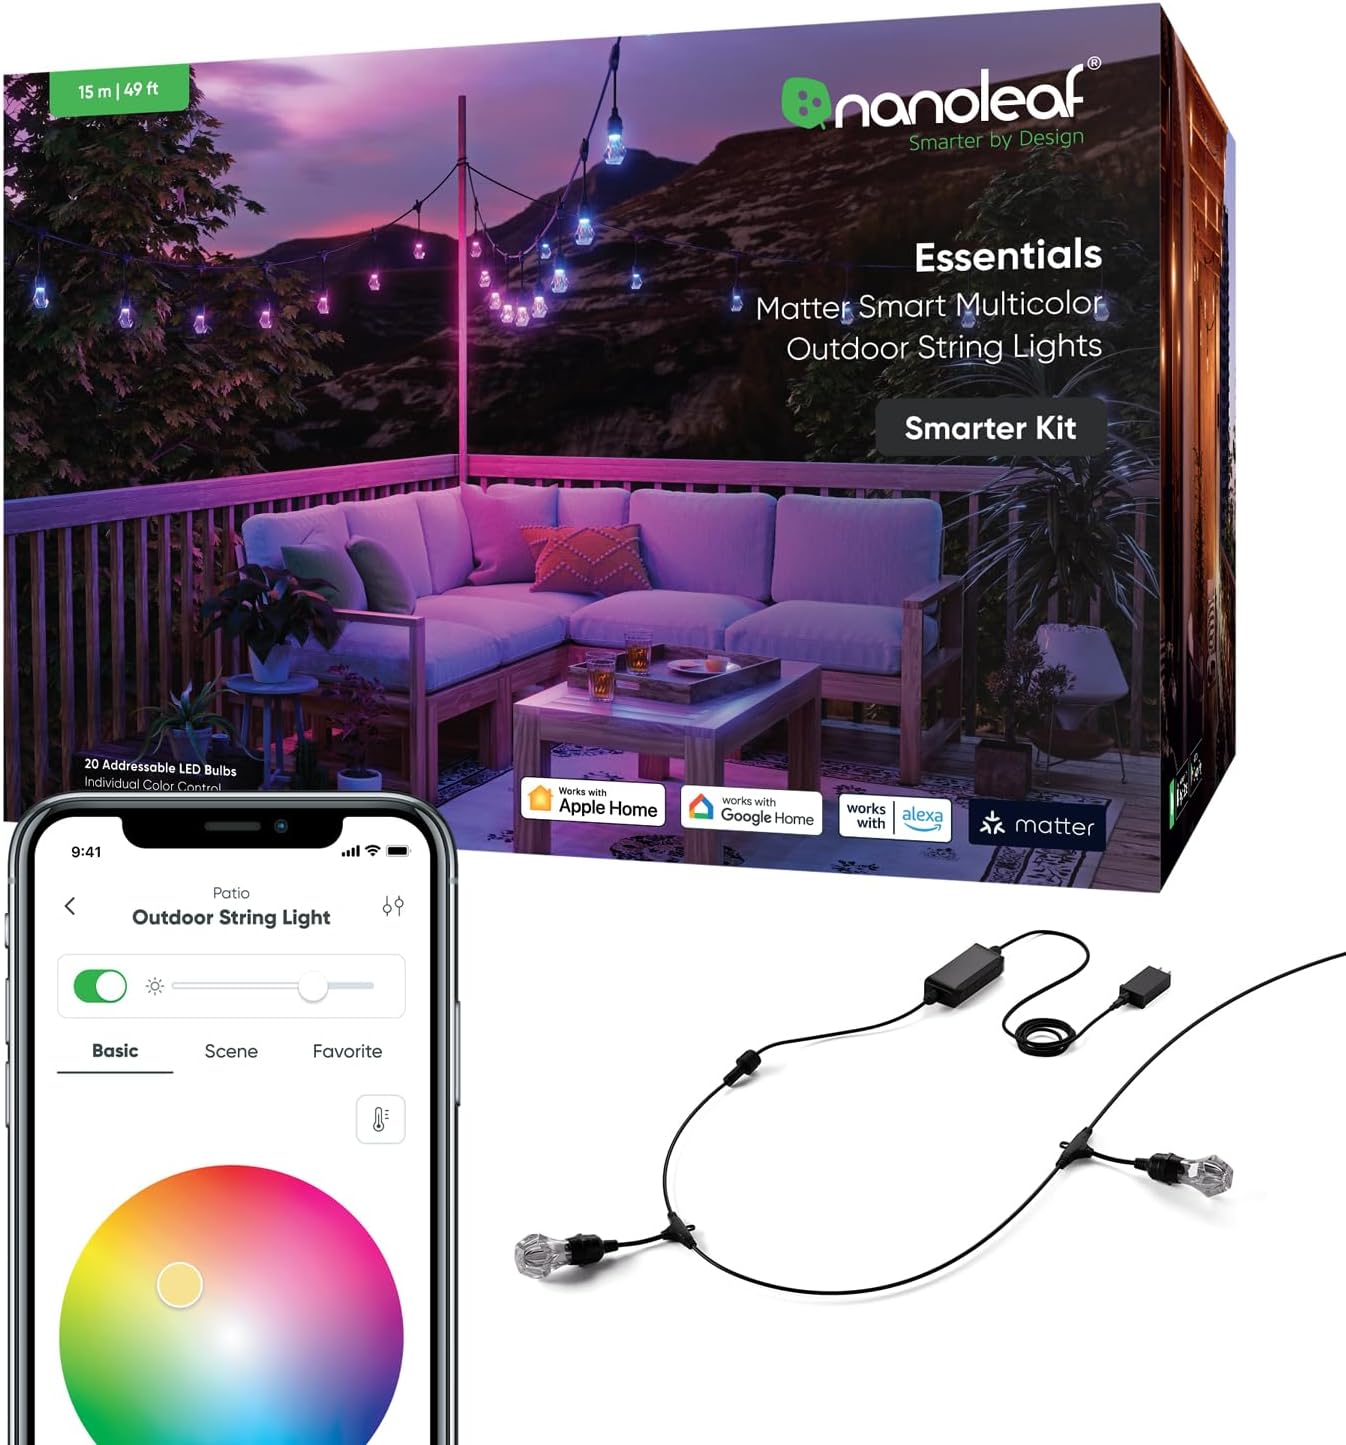 Nanoleaf essentials outdoor string light product